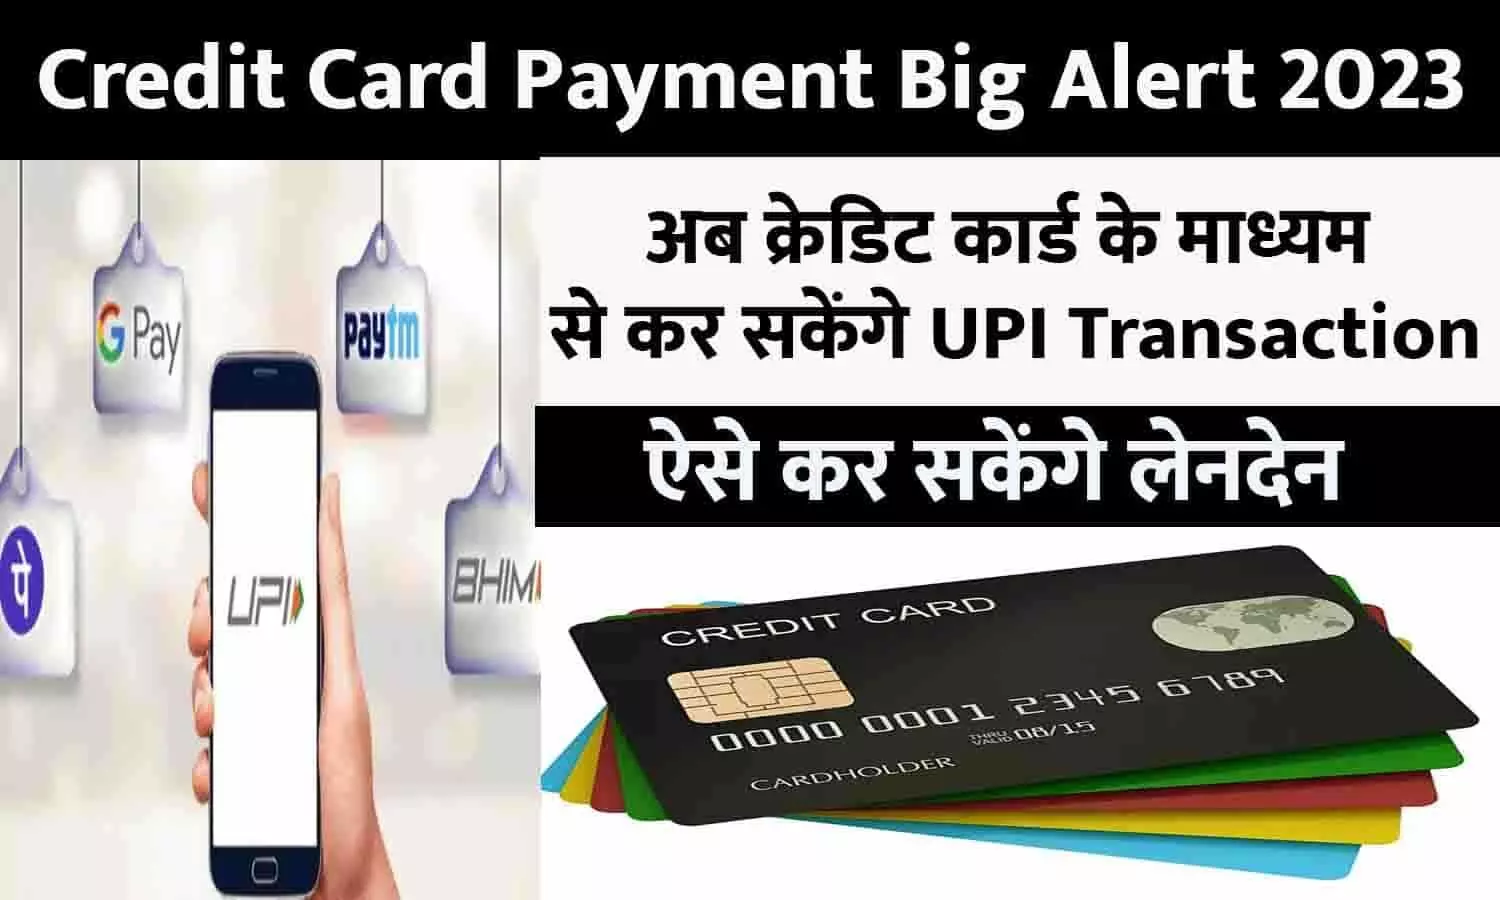 Credit Card Payment Big Alert 2023: अब क्रेडिट कार्ड के माध्यम से कर सकेंगे UPI Transaction, ऐसे कर सकेंगे लेनदेन, बिन देर किए फटाफट ध्यान दे